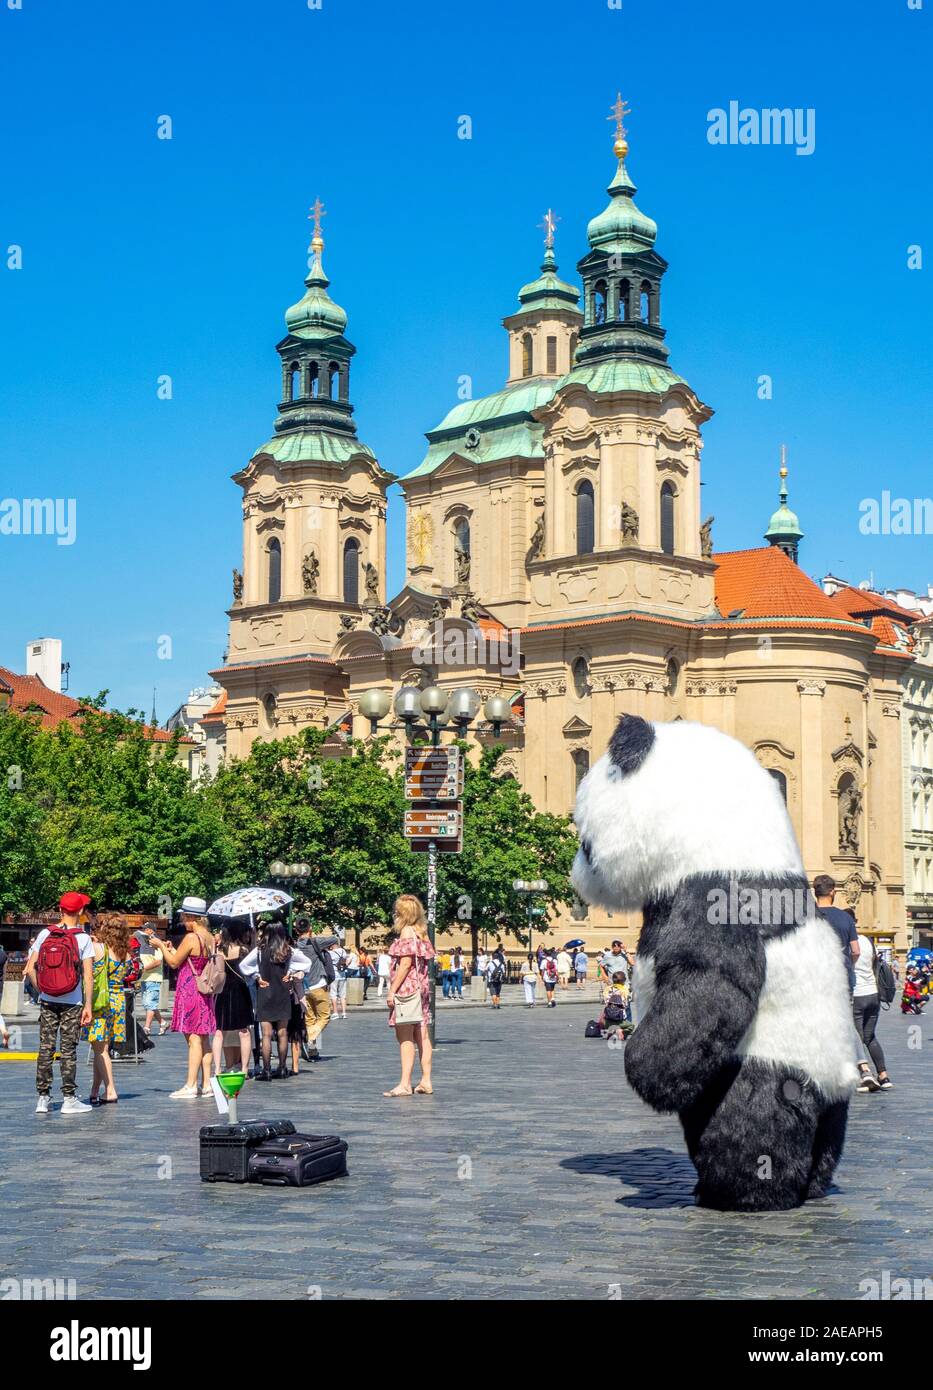 Homme en costume de panda en bus à la place de la vieille ville et église Saint-Nicolas Prague tchèque Banque D'Images